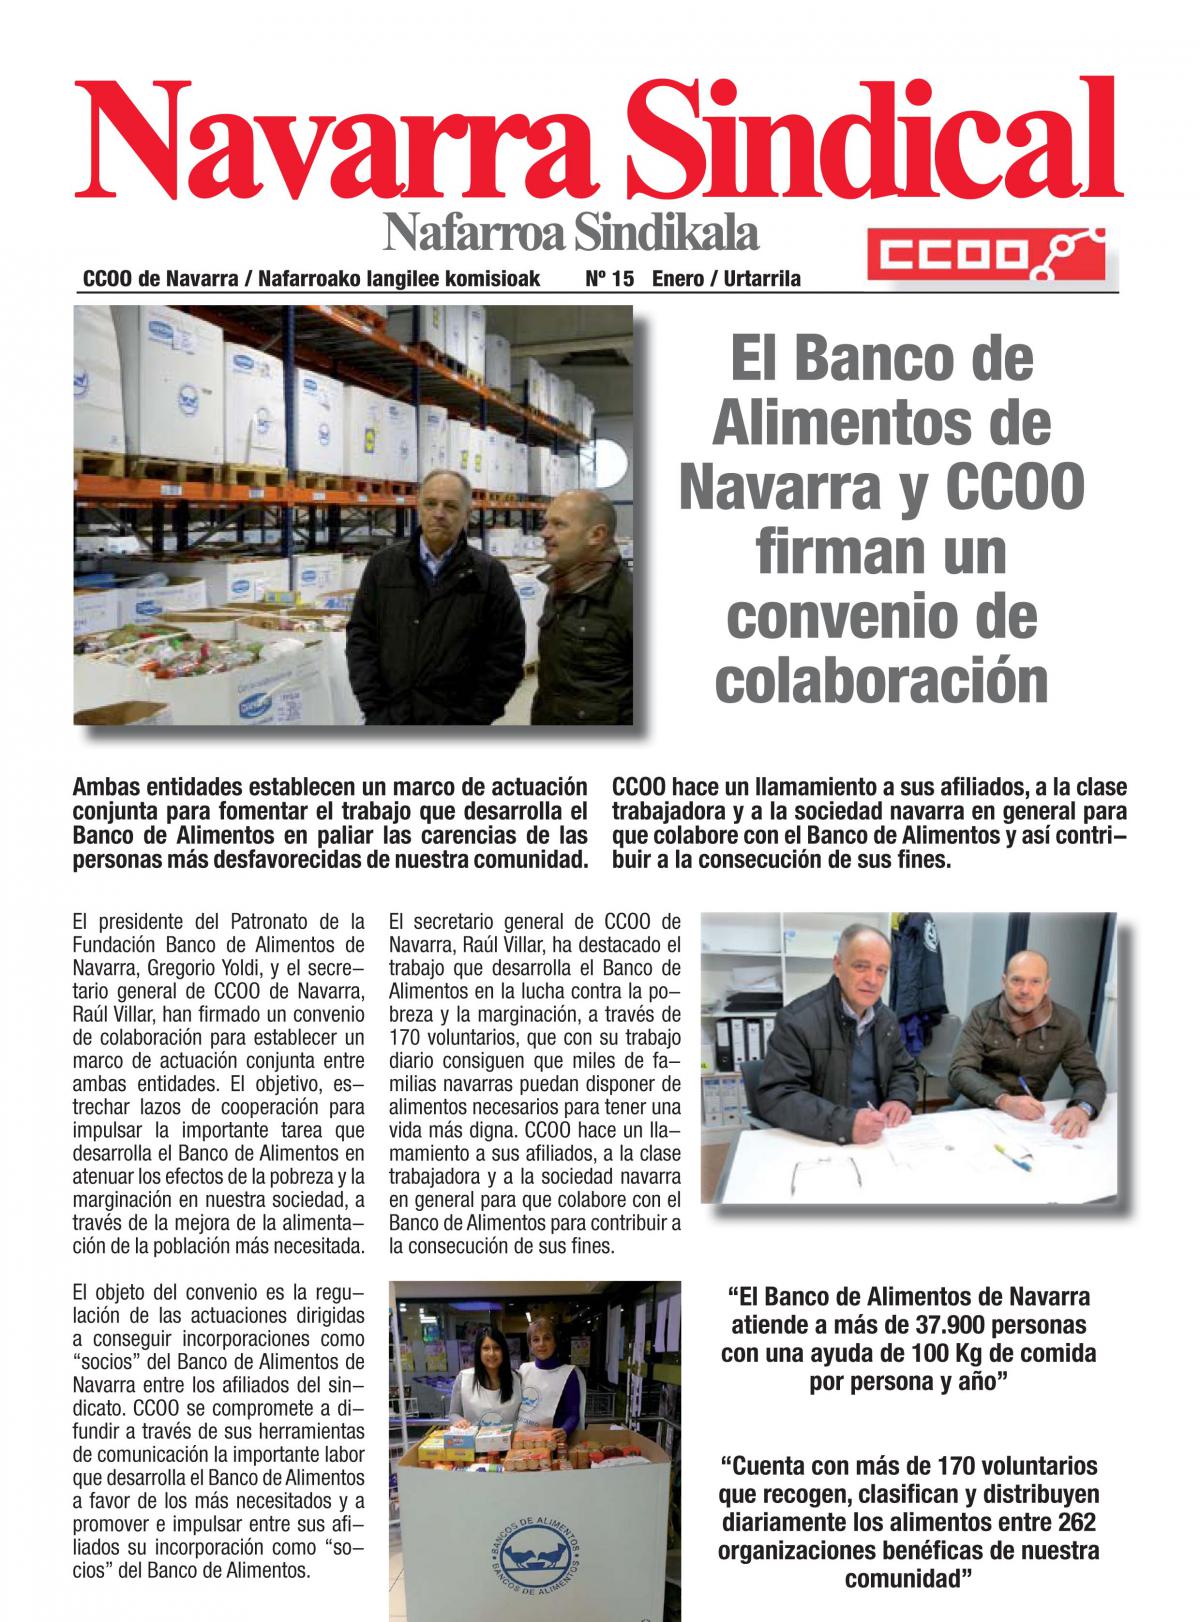 El Banco de Alimentos de Navarra y CCOO firman un convenio de colaboracin